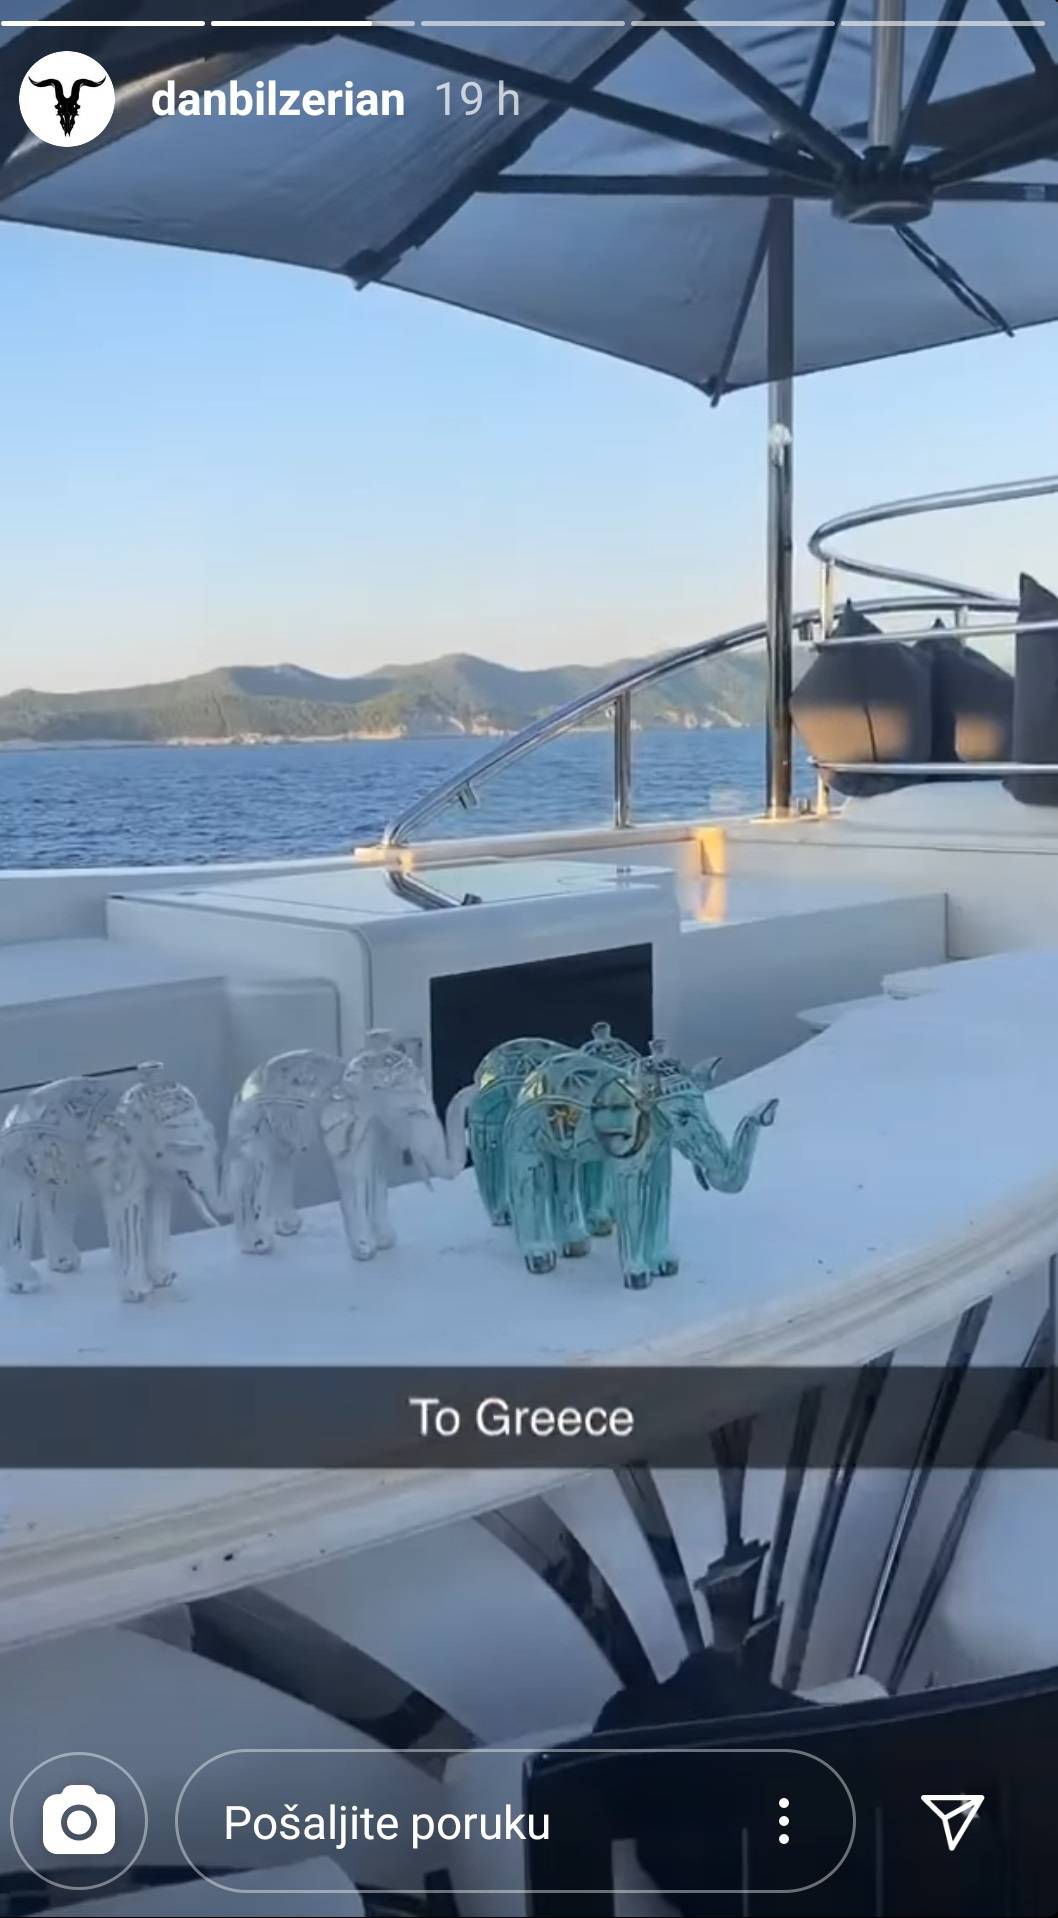 'Pokupili' su se nakon kazne: Milijunaš i ekipa otišli u Grčku